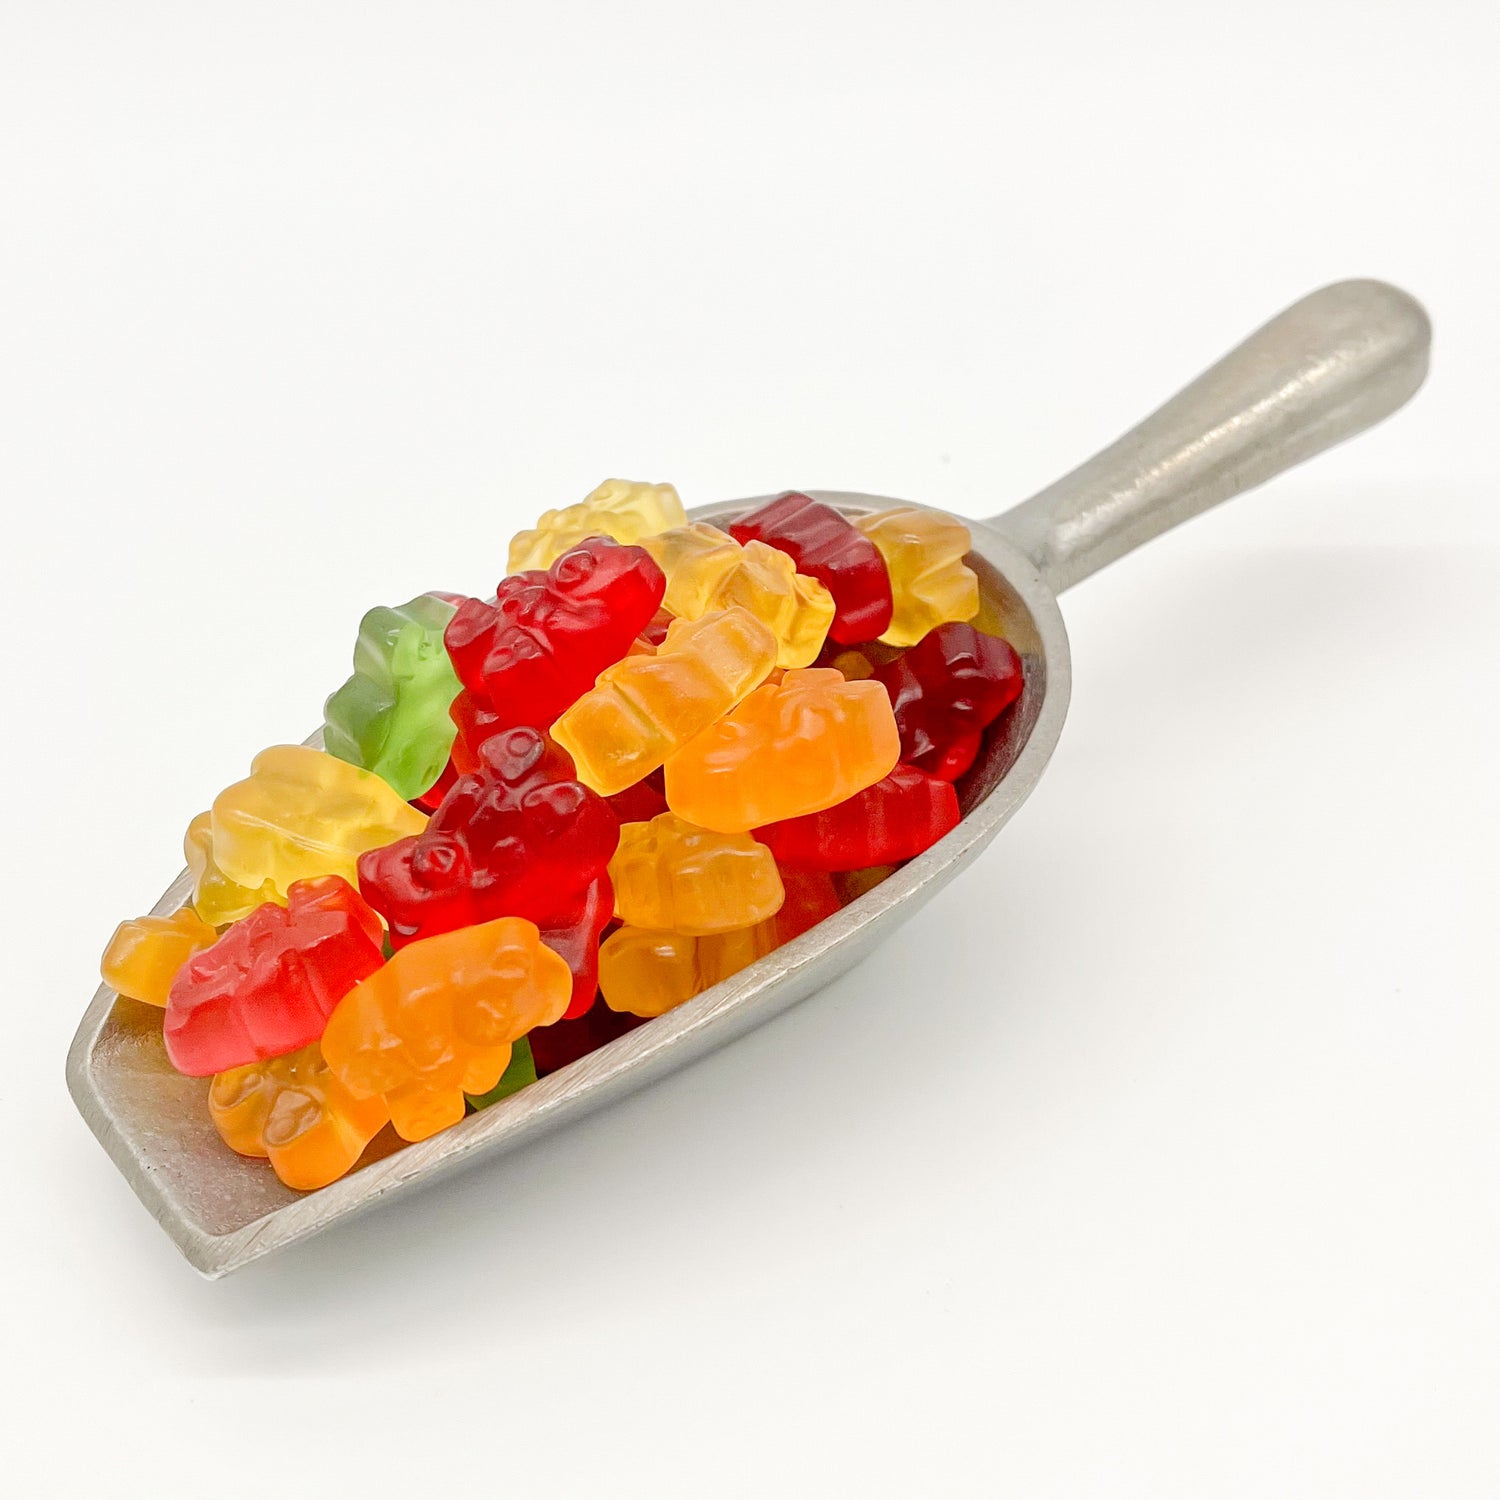 Metal scoop holding fruit flavored gummi bears